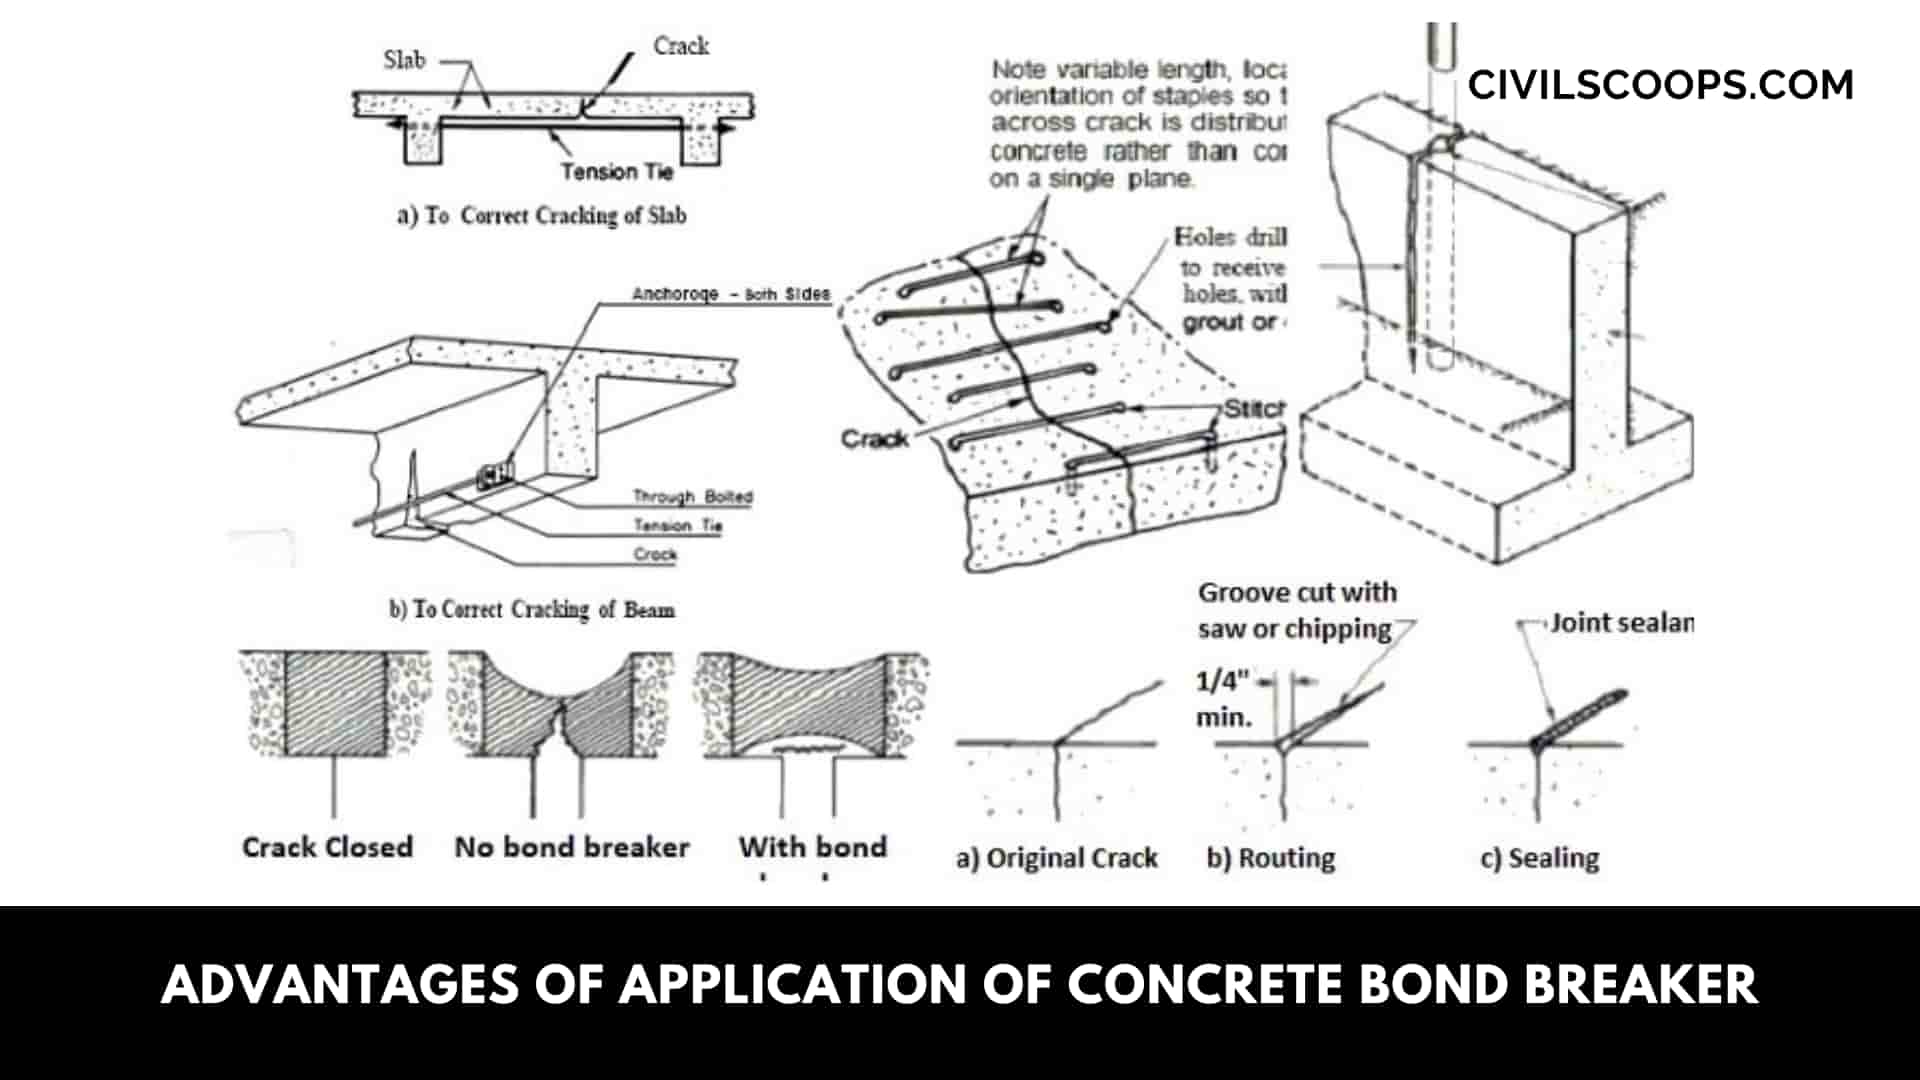 Advantages of Application of Concrete Bond Breaker